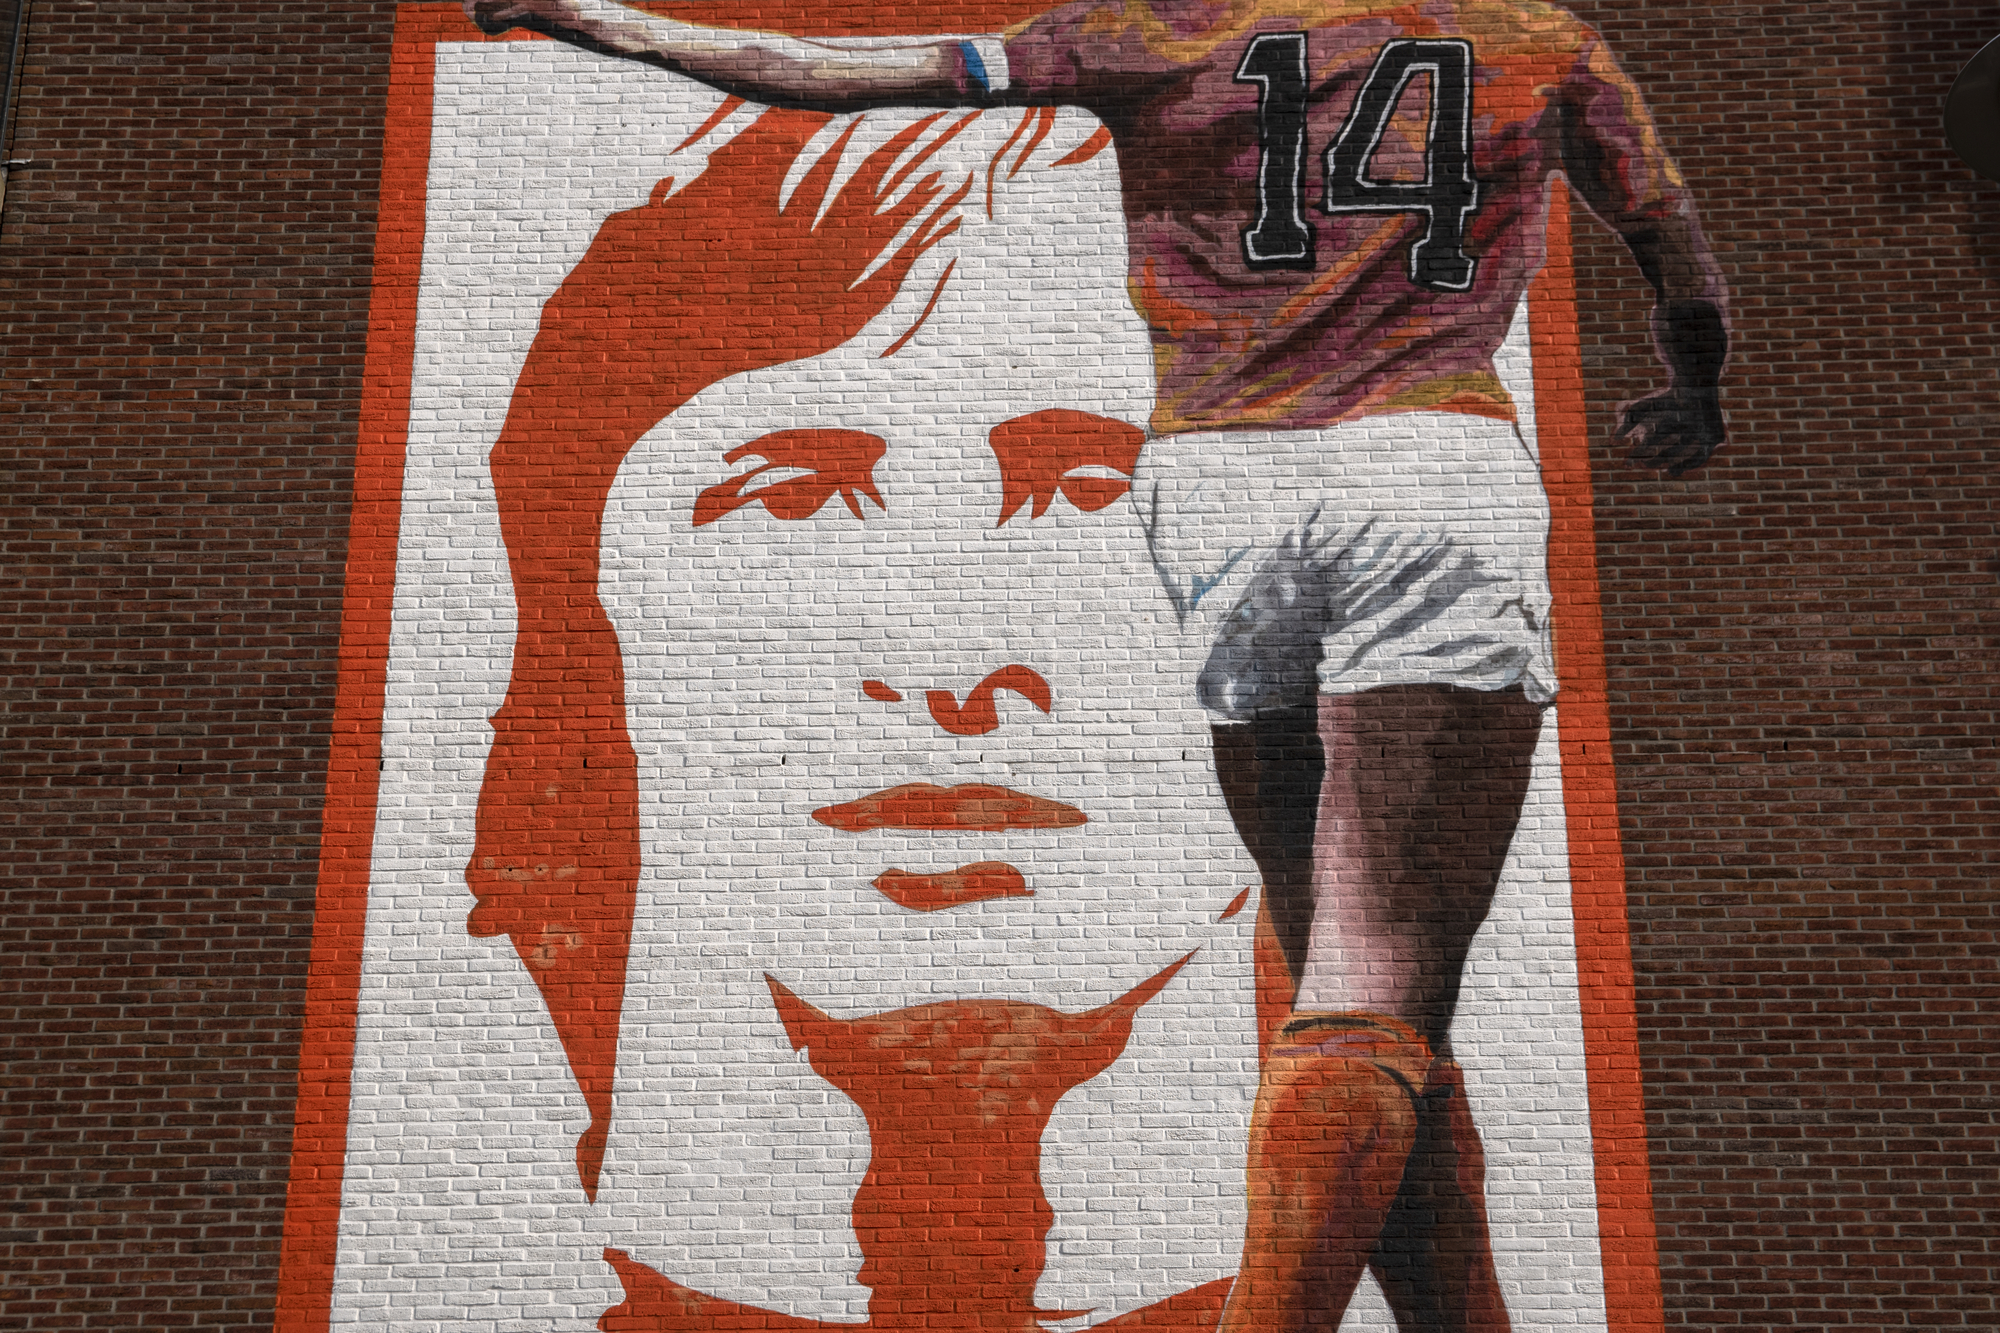 Johan Cruyff revolutioniert das Konzept des bestehenden Fußball